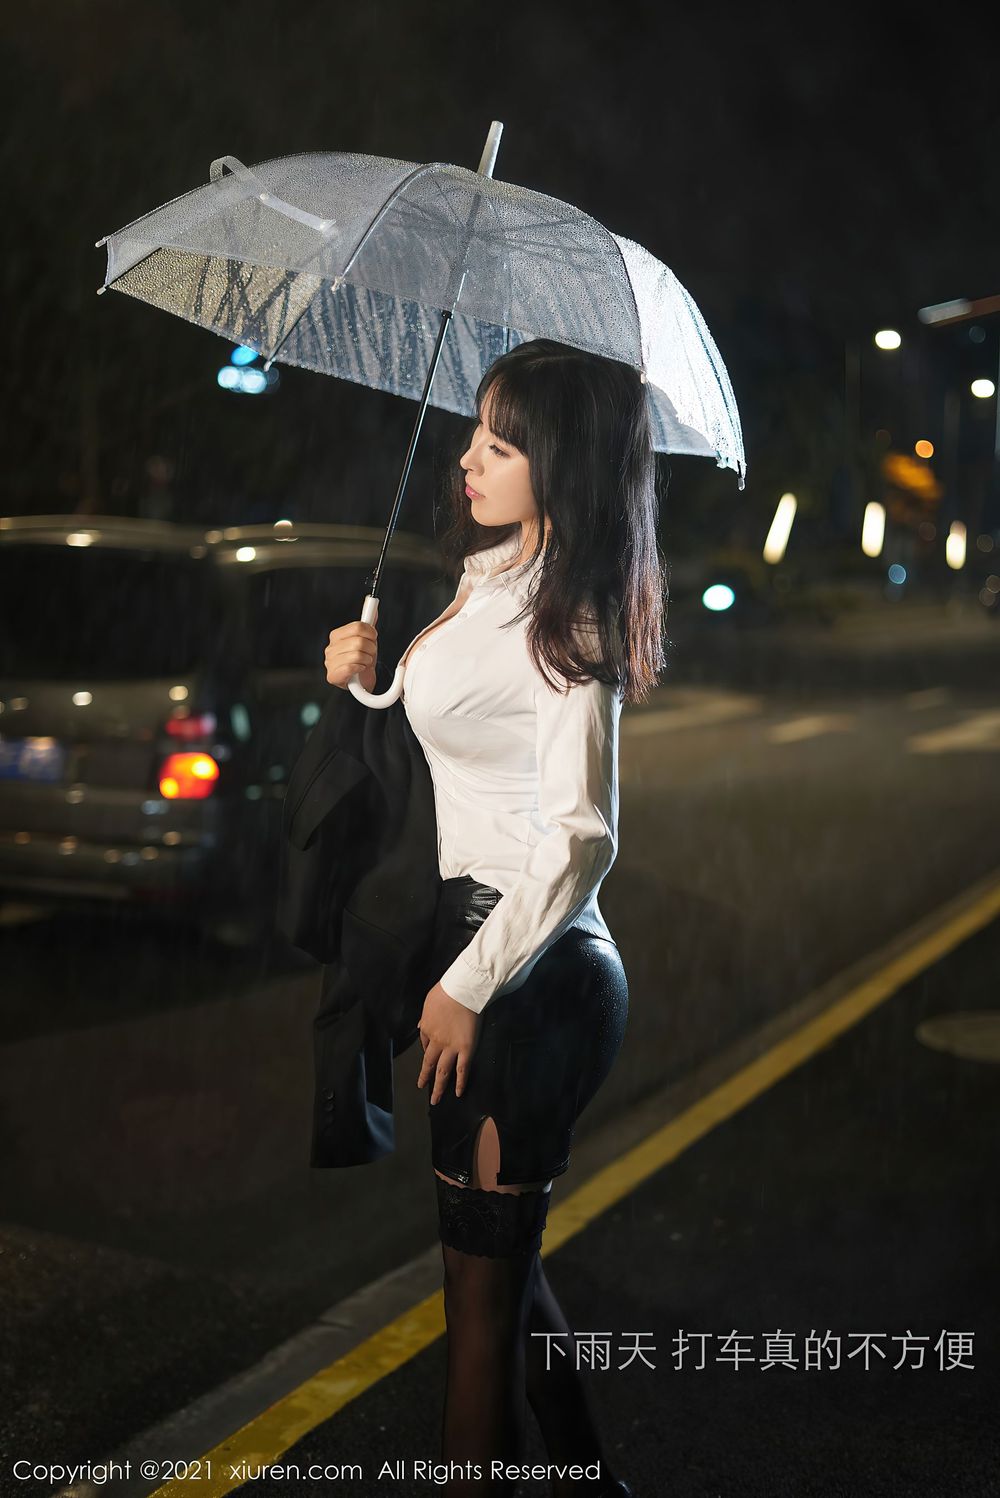 美女模特乔漫妮mina - 外地考察下雨天打车剧情写真